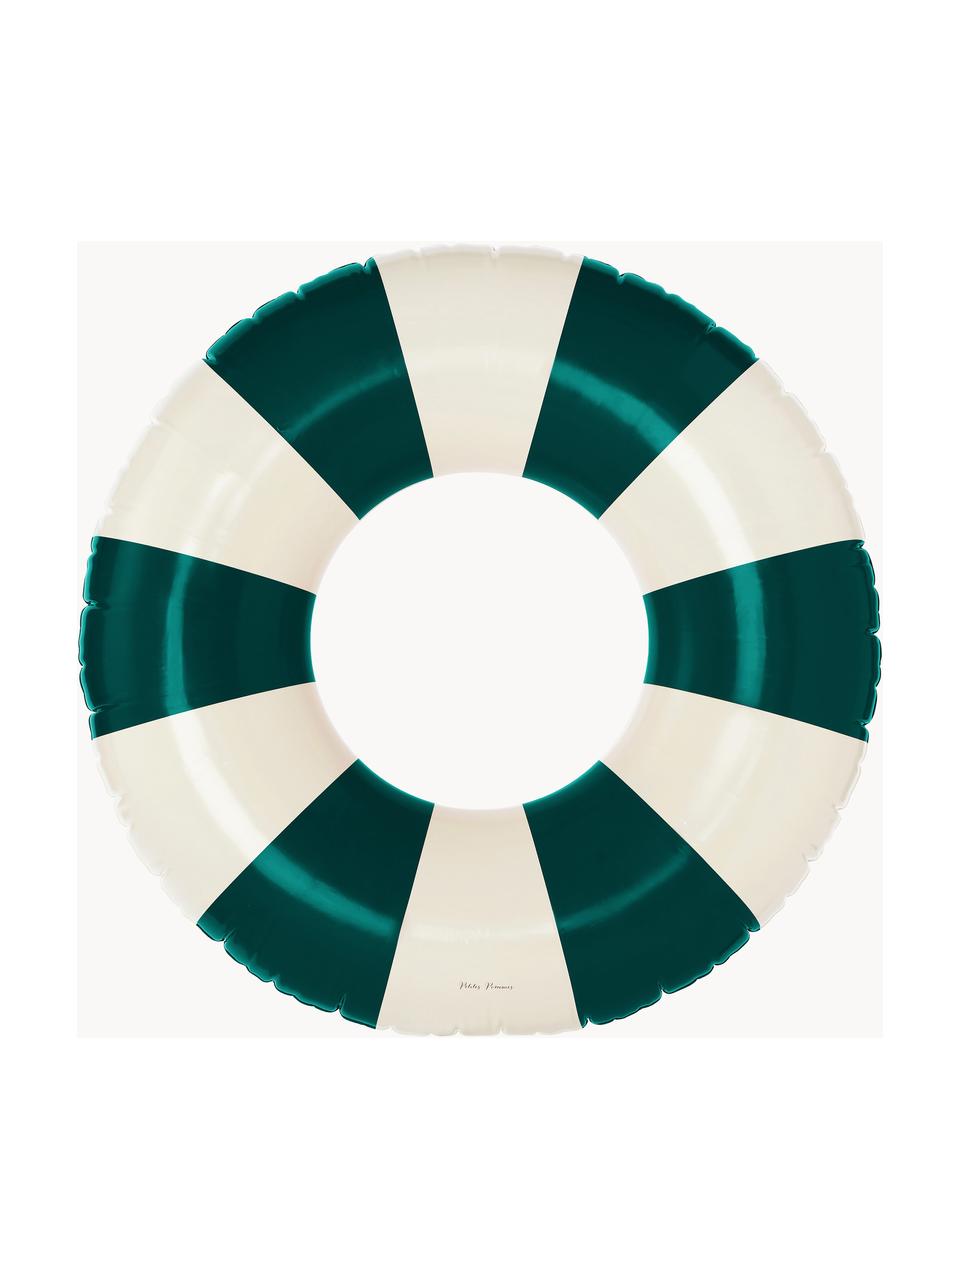 Ręcznie wykonane koło do pływania Celine, Tworzywo sztuczne PVC, Ciemny zielony, złamana biel, Ø 120 cm